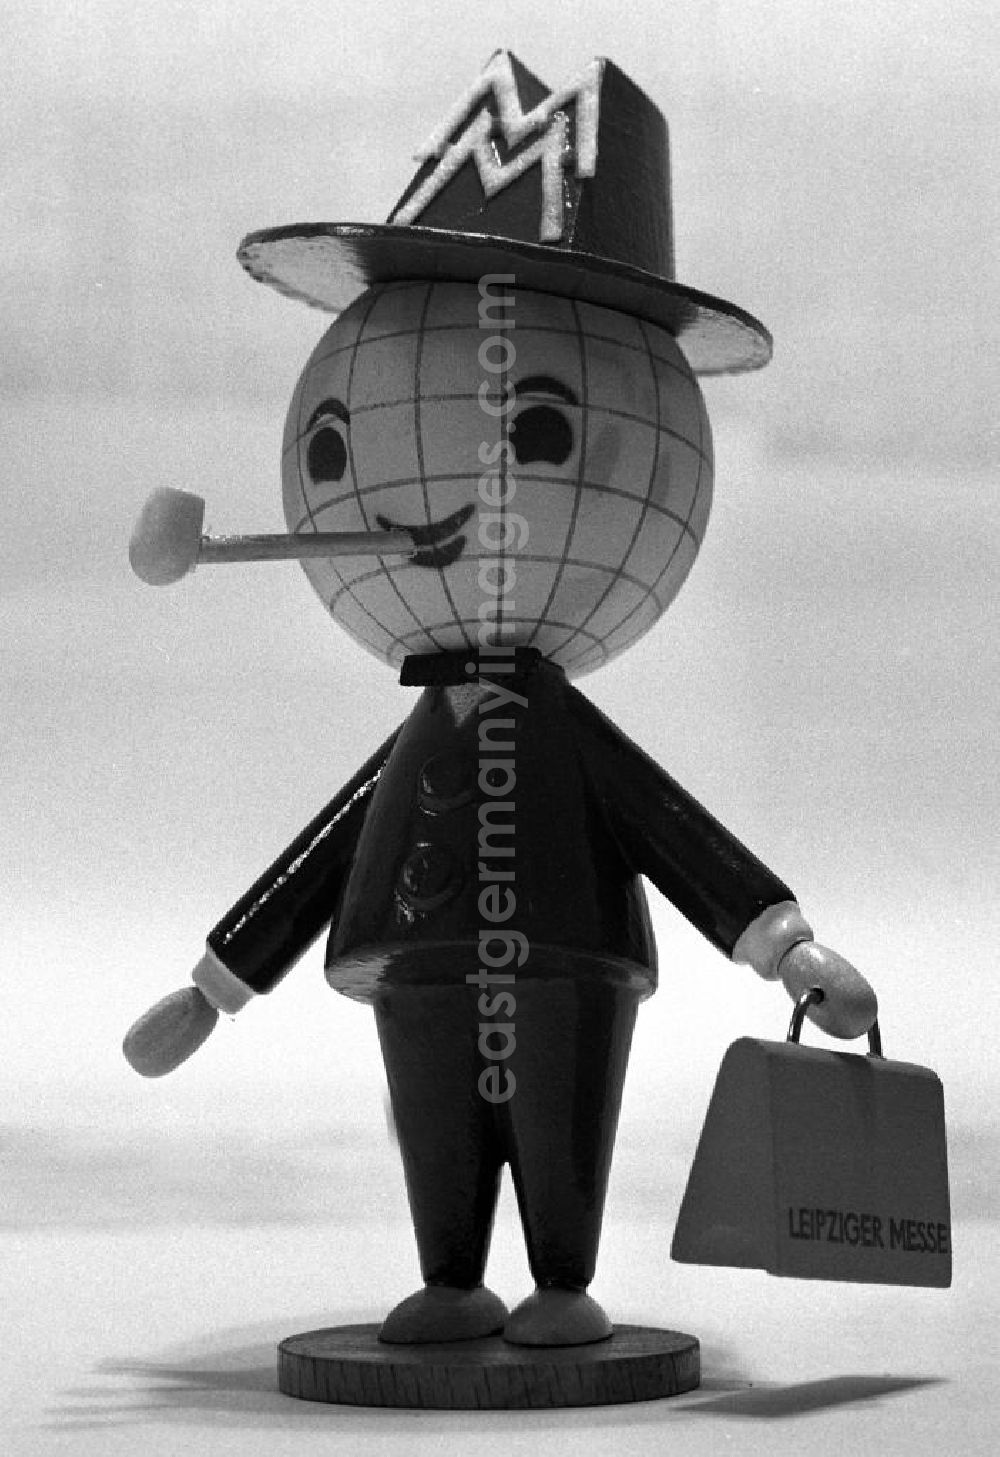 GDR photo archive: Leipzig - Das Messemännchen mit seinem übergroßen Globus-Kopf - stets einen Koffer mit dem Messelogo in der Hand und eine weiße Pfeife im Mund - war seit 1964 das Maskottchen der Leipziger Messe in der DDR. Es warb über 3